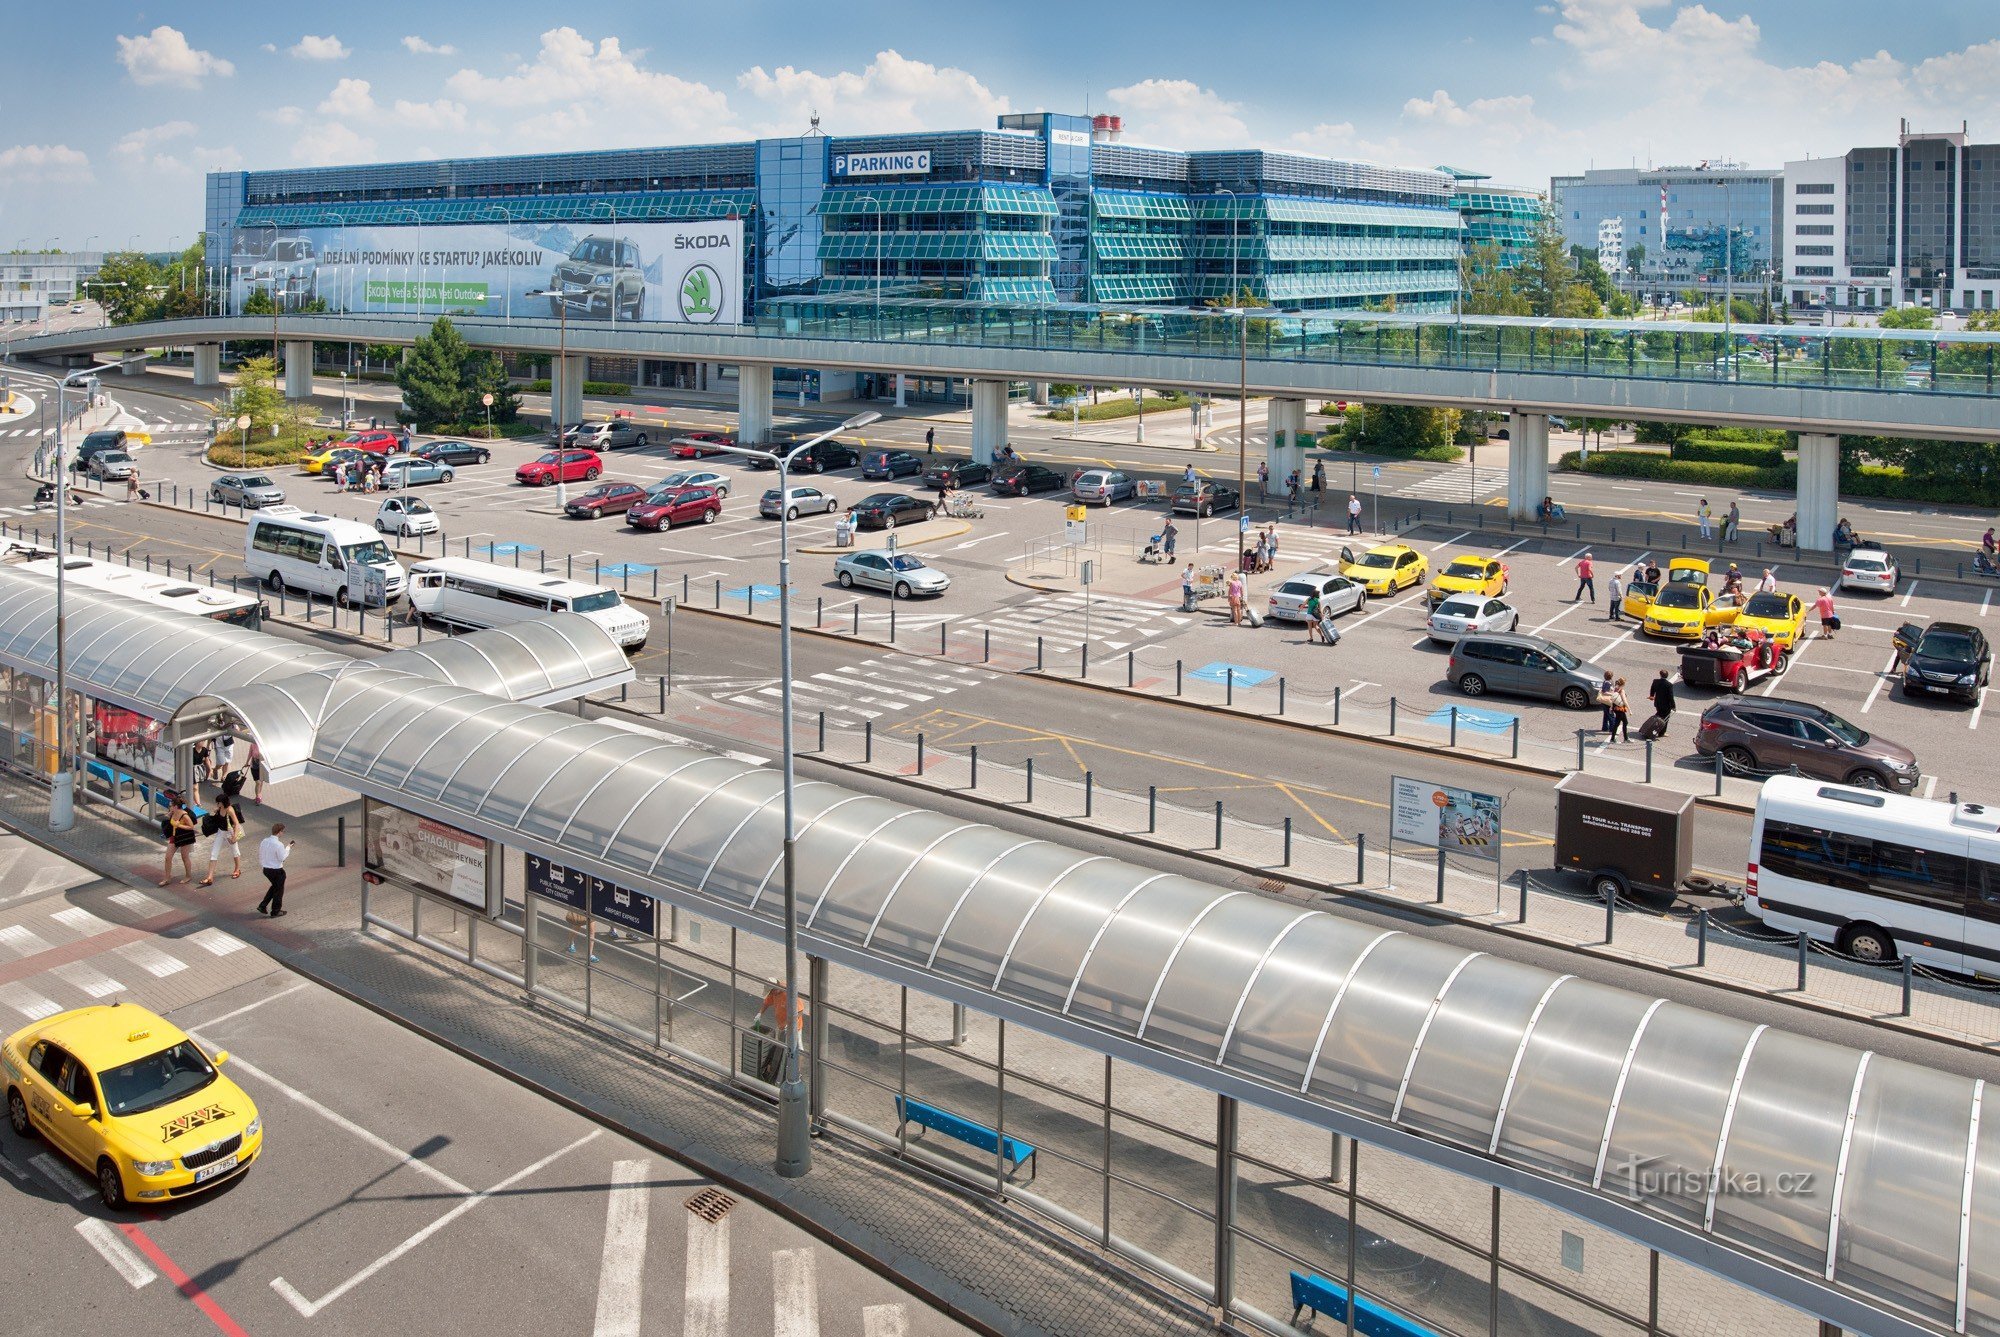 Praška zračna luka mijenja se za smještaj putnika, snizila je cijene osvježenja i parkinga